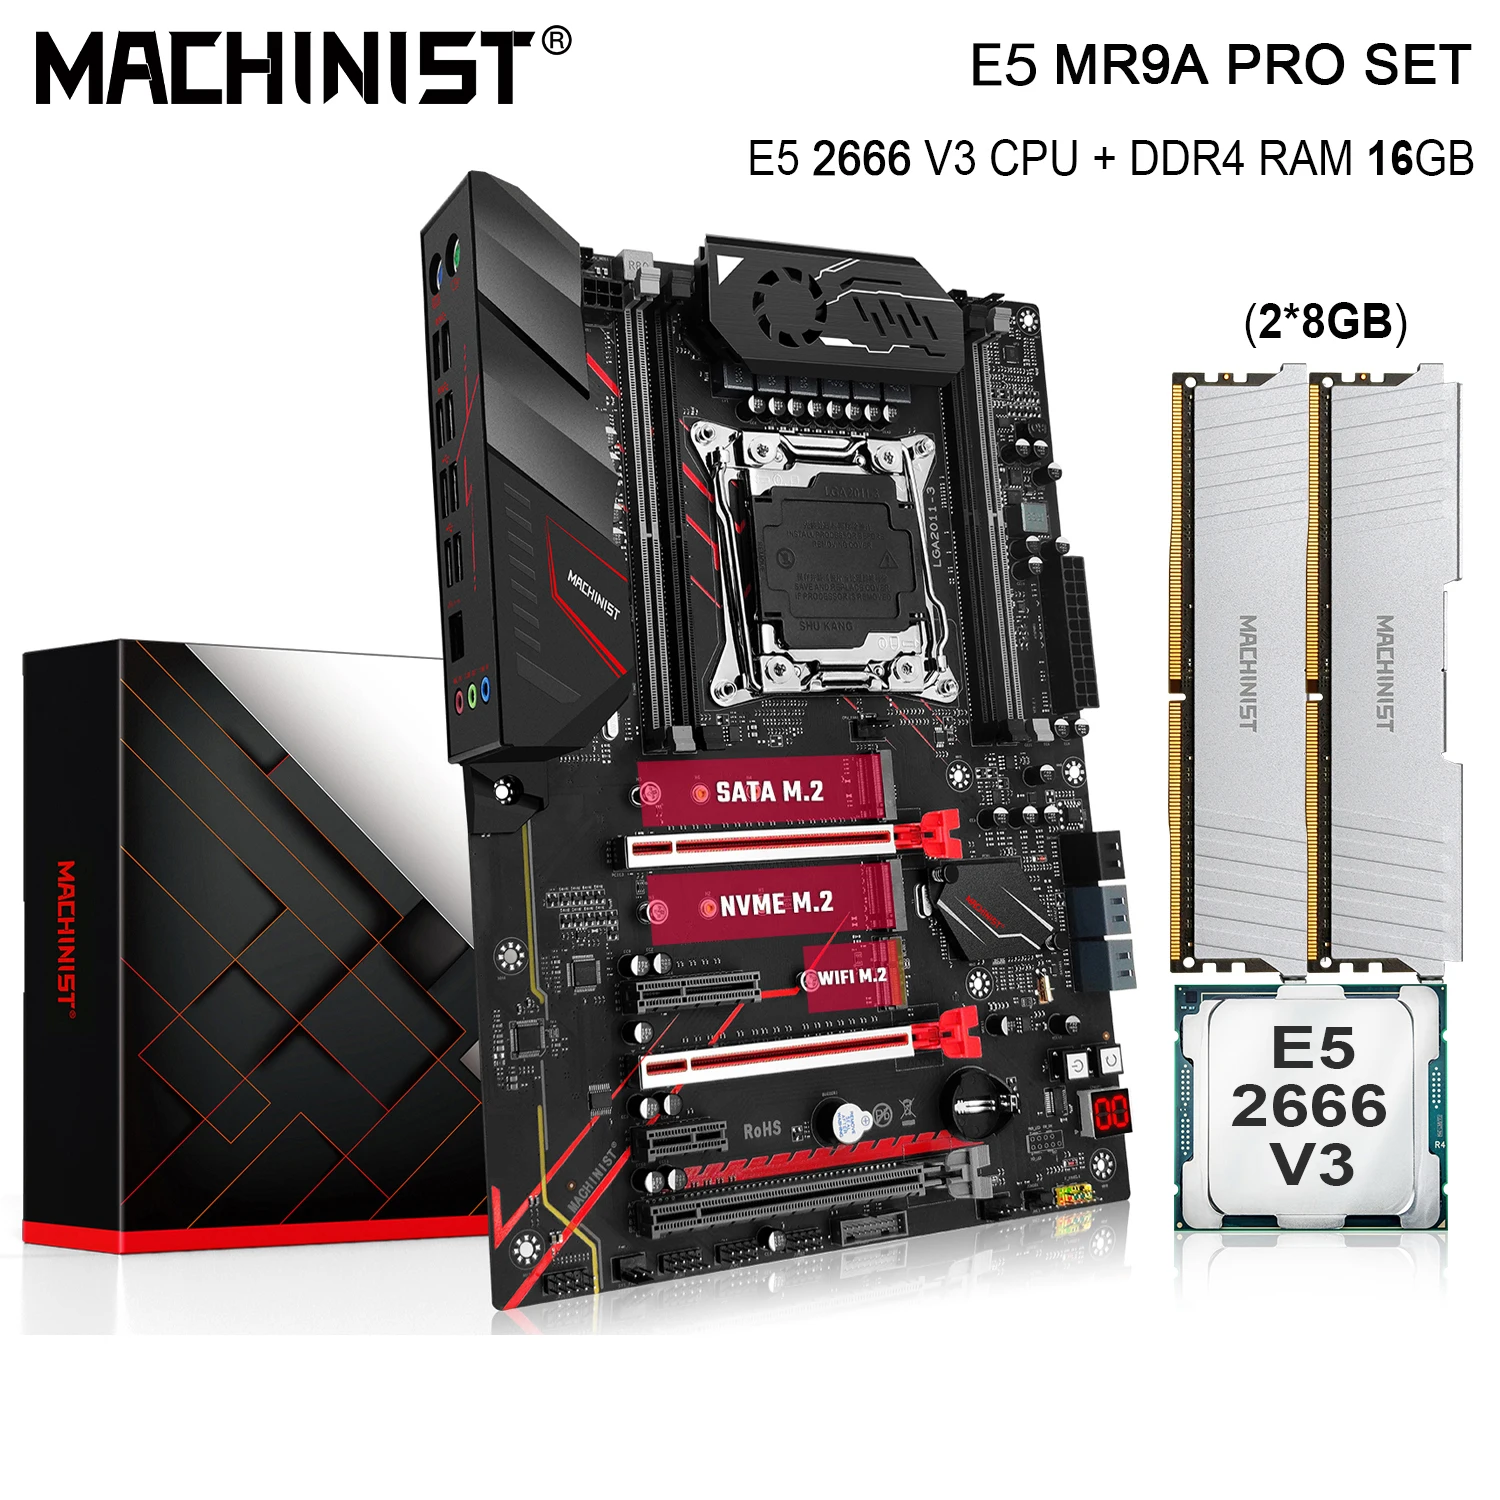 MAȘINIST X99 Kit Placa de baza Cu E5 2666 V3 Procesor CPU LGA 2011-3 16G(2*8) DDR4 Memorie RAM M. 2 NVME SATA M. 2 MR9A PRO MAX